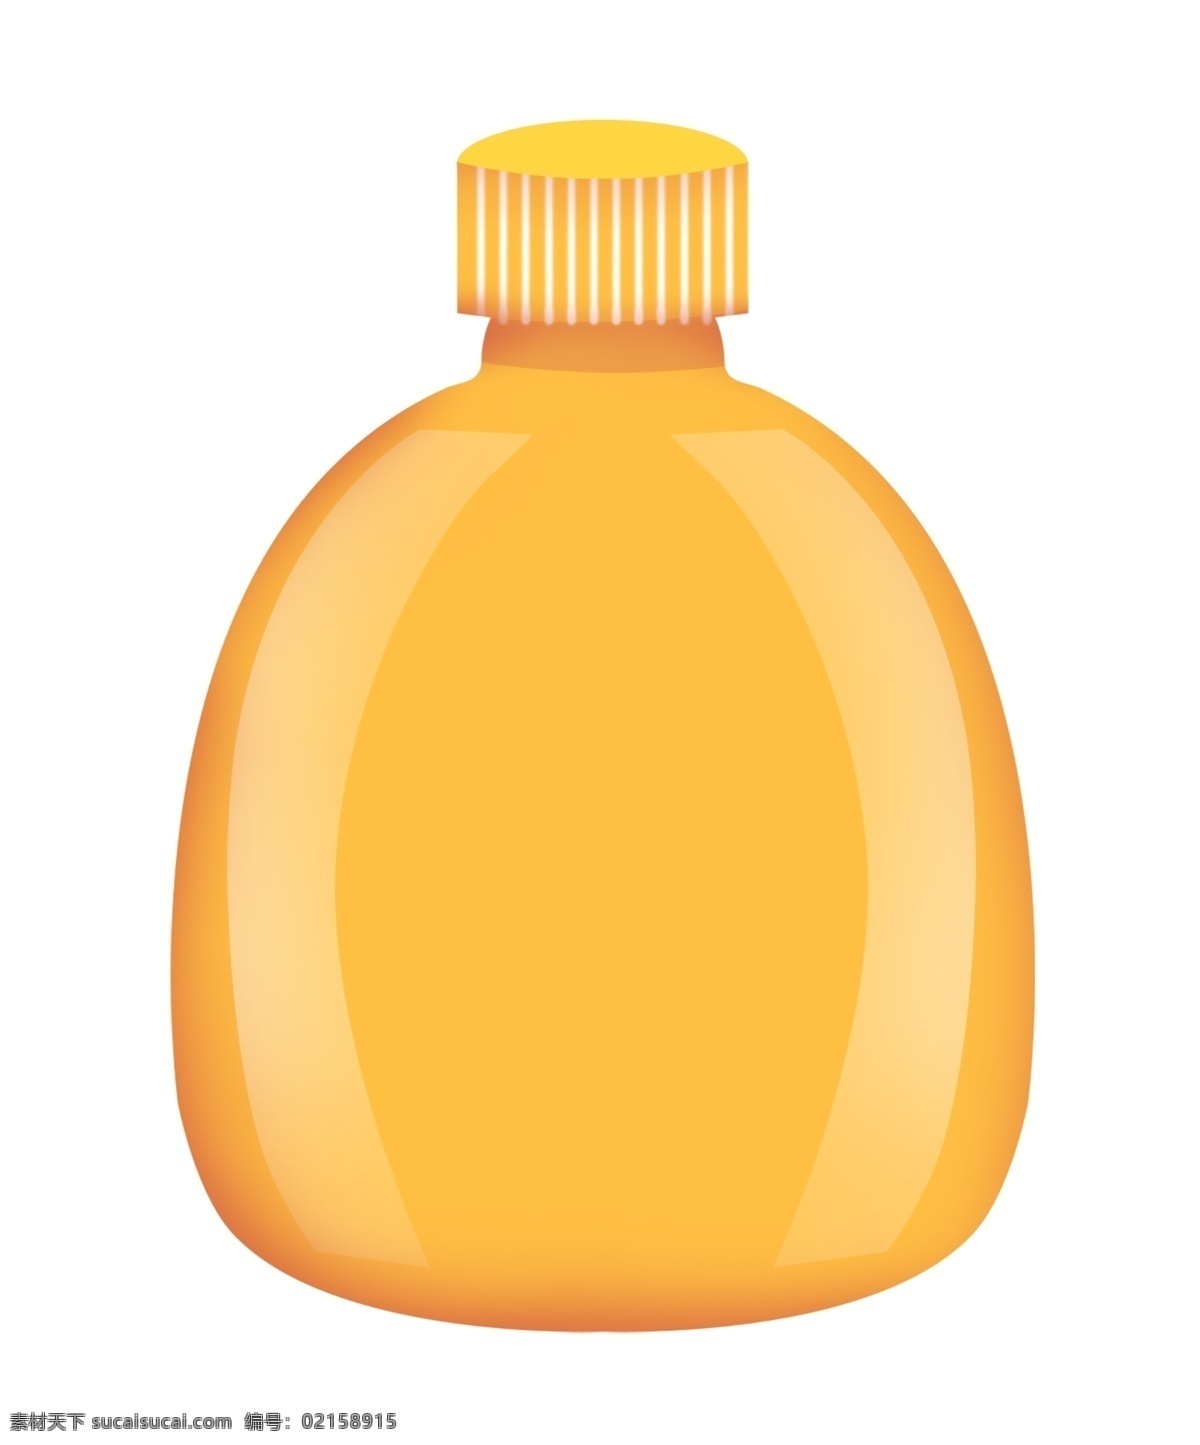 黄色 瓶子 生活用品 生活